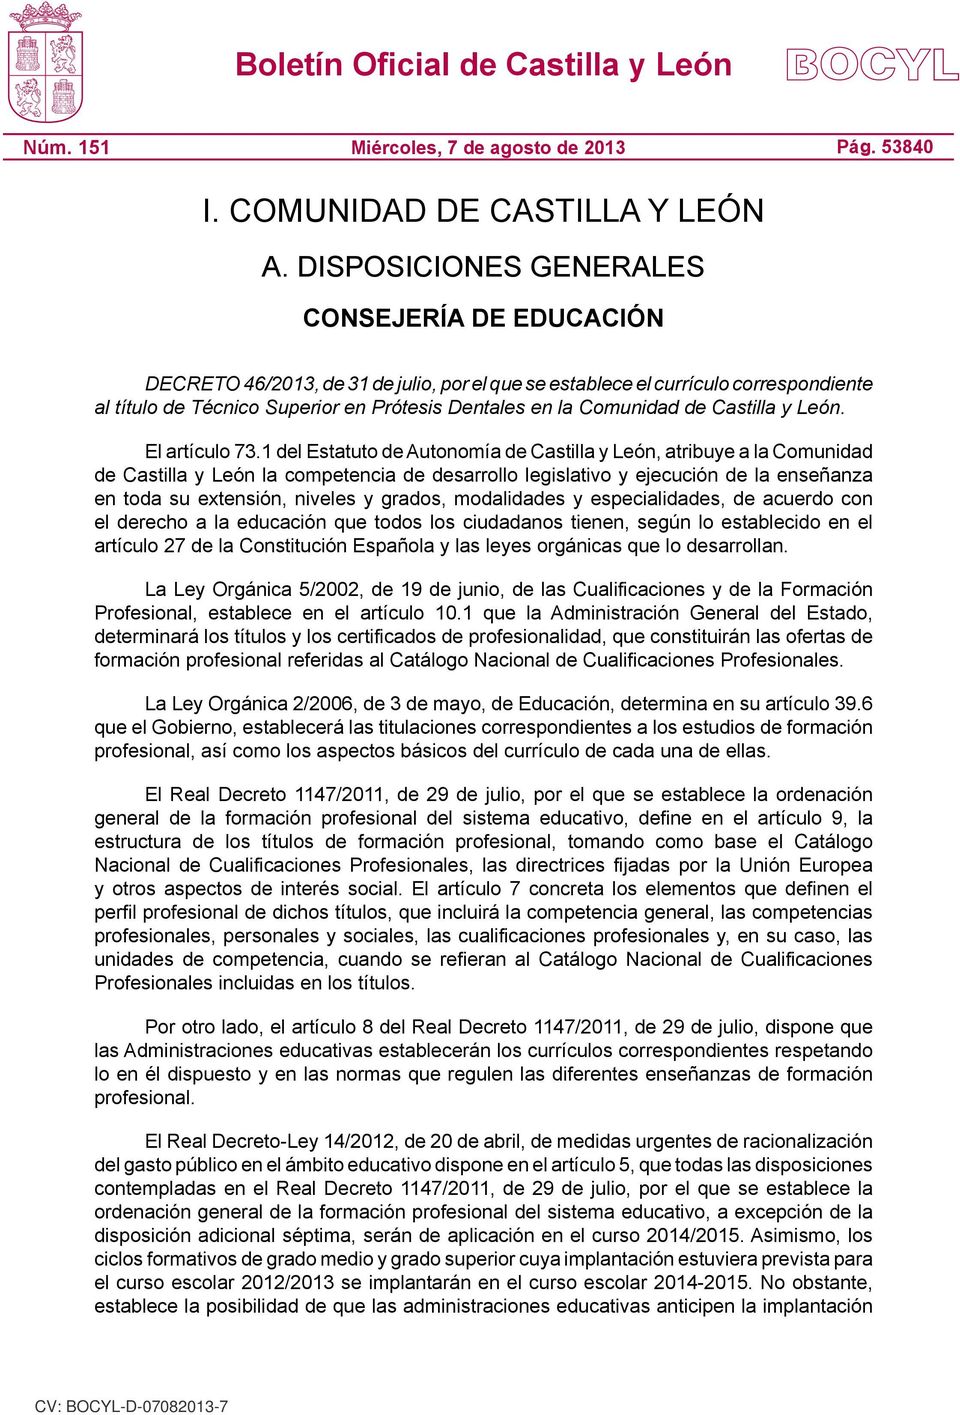 Comunidad de Castilla y León. El artículo 73.